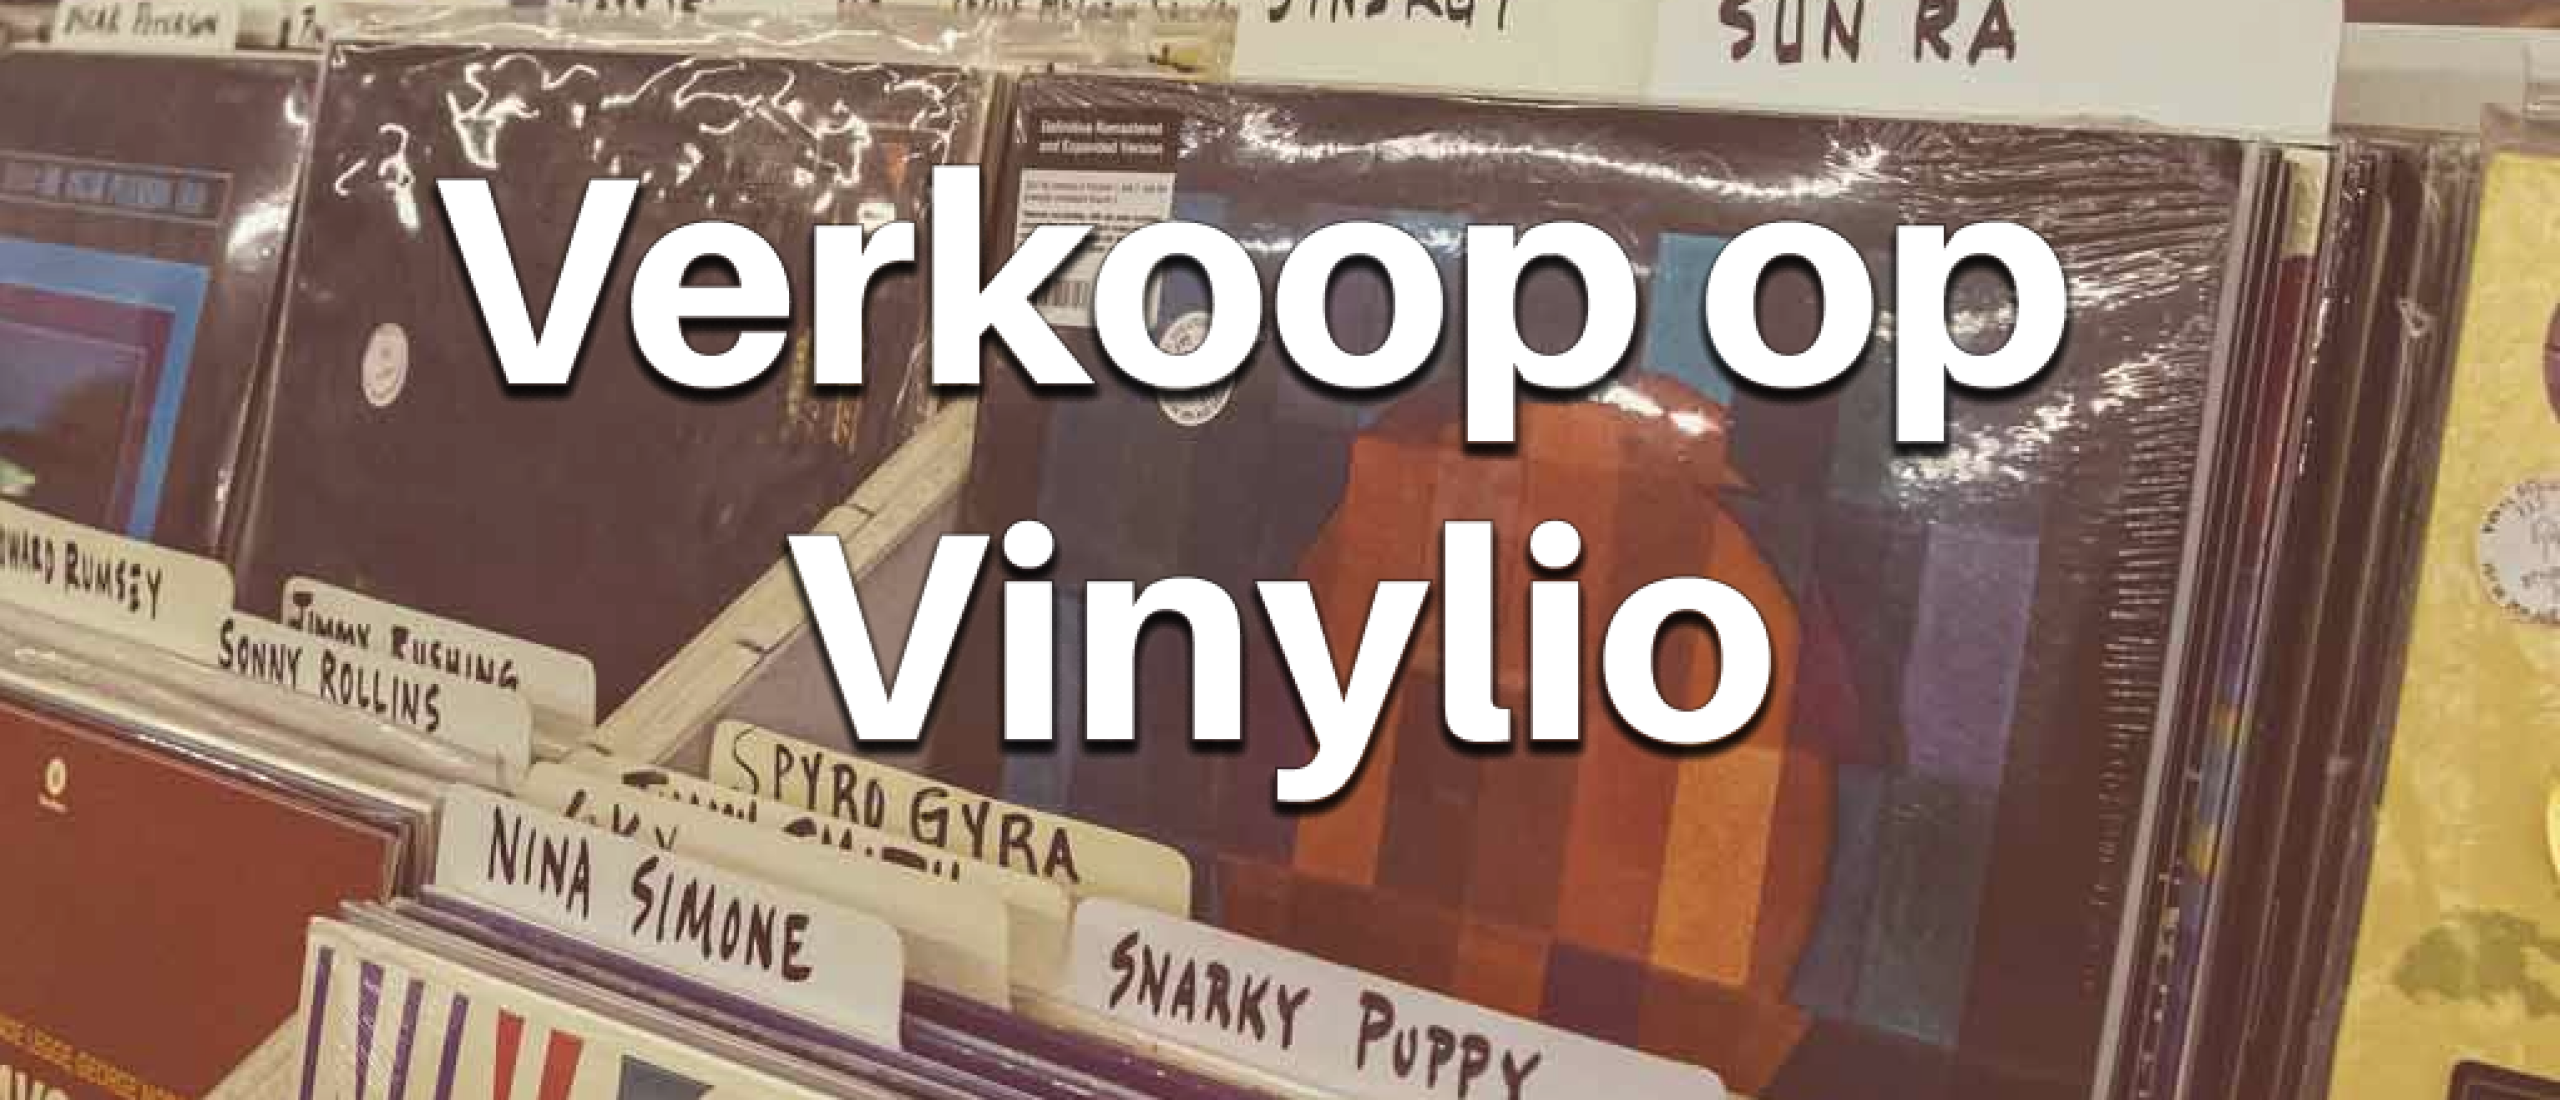 Verkoop jouw vinylplaten op vinylio.nl